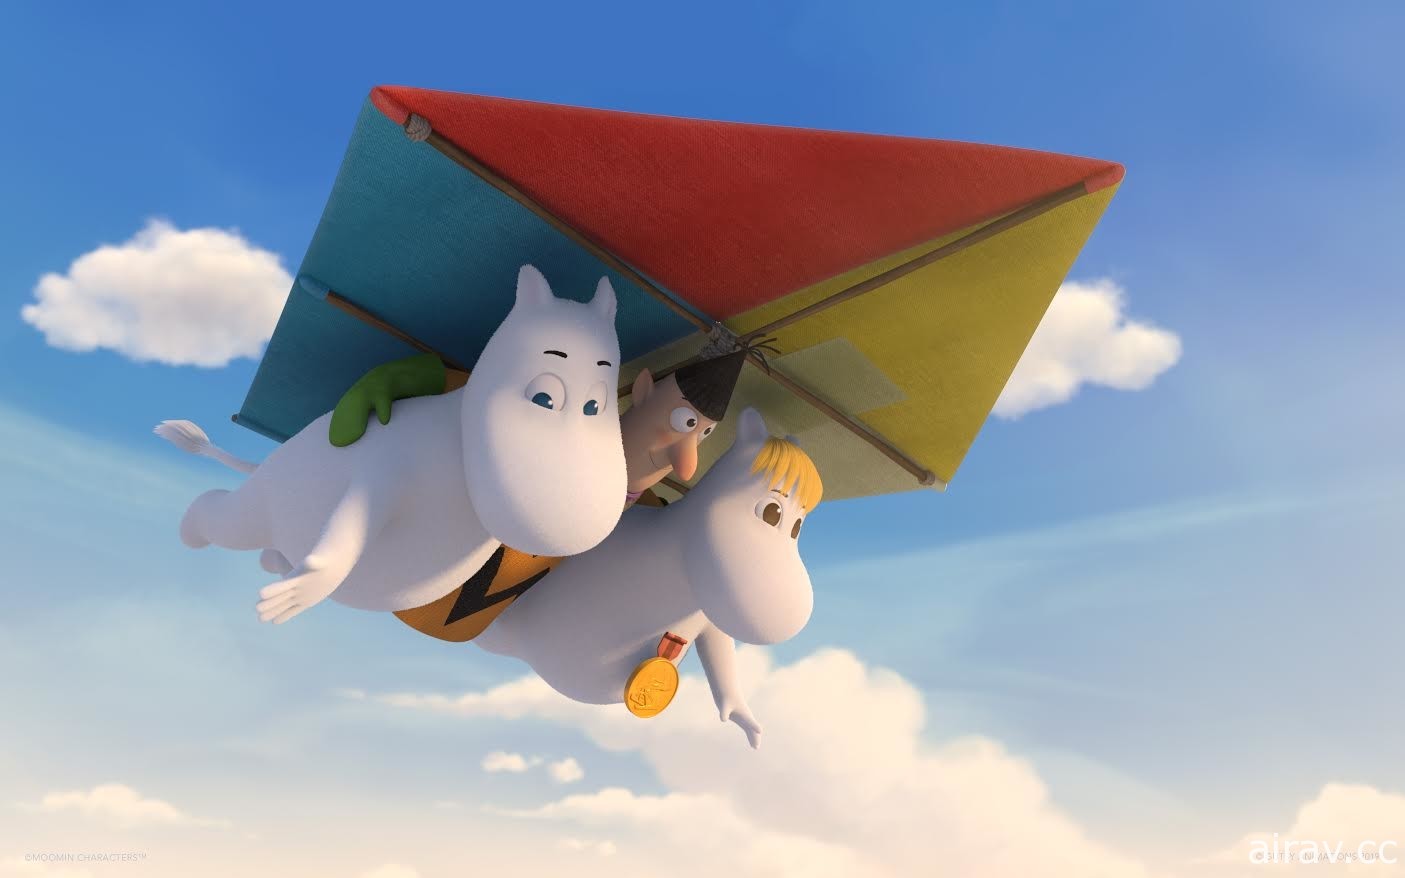 高雄電影節公布「孩子幻想國」單元片單《嚕嚕米》《海豚總動員》等動畫上映